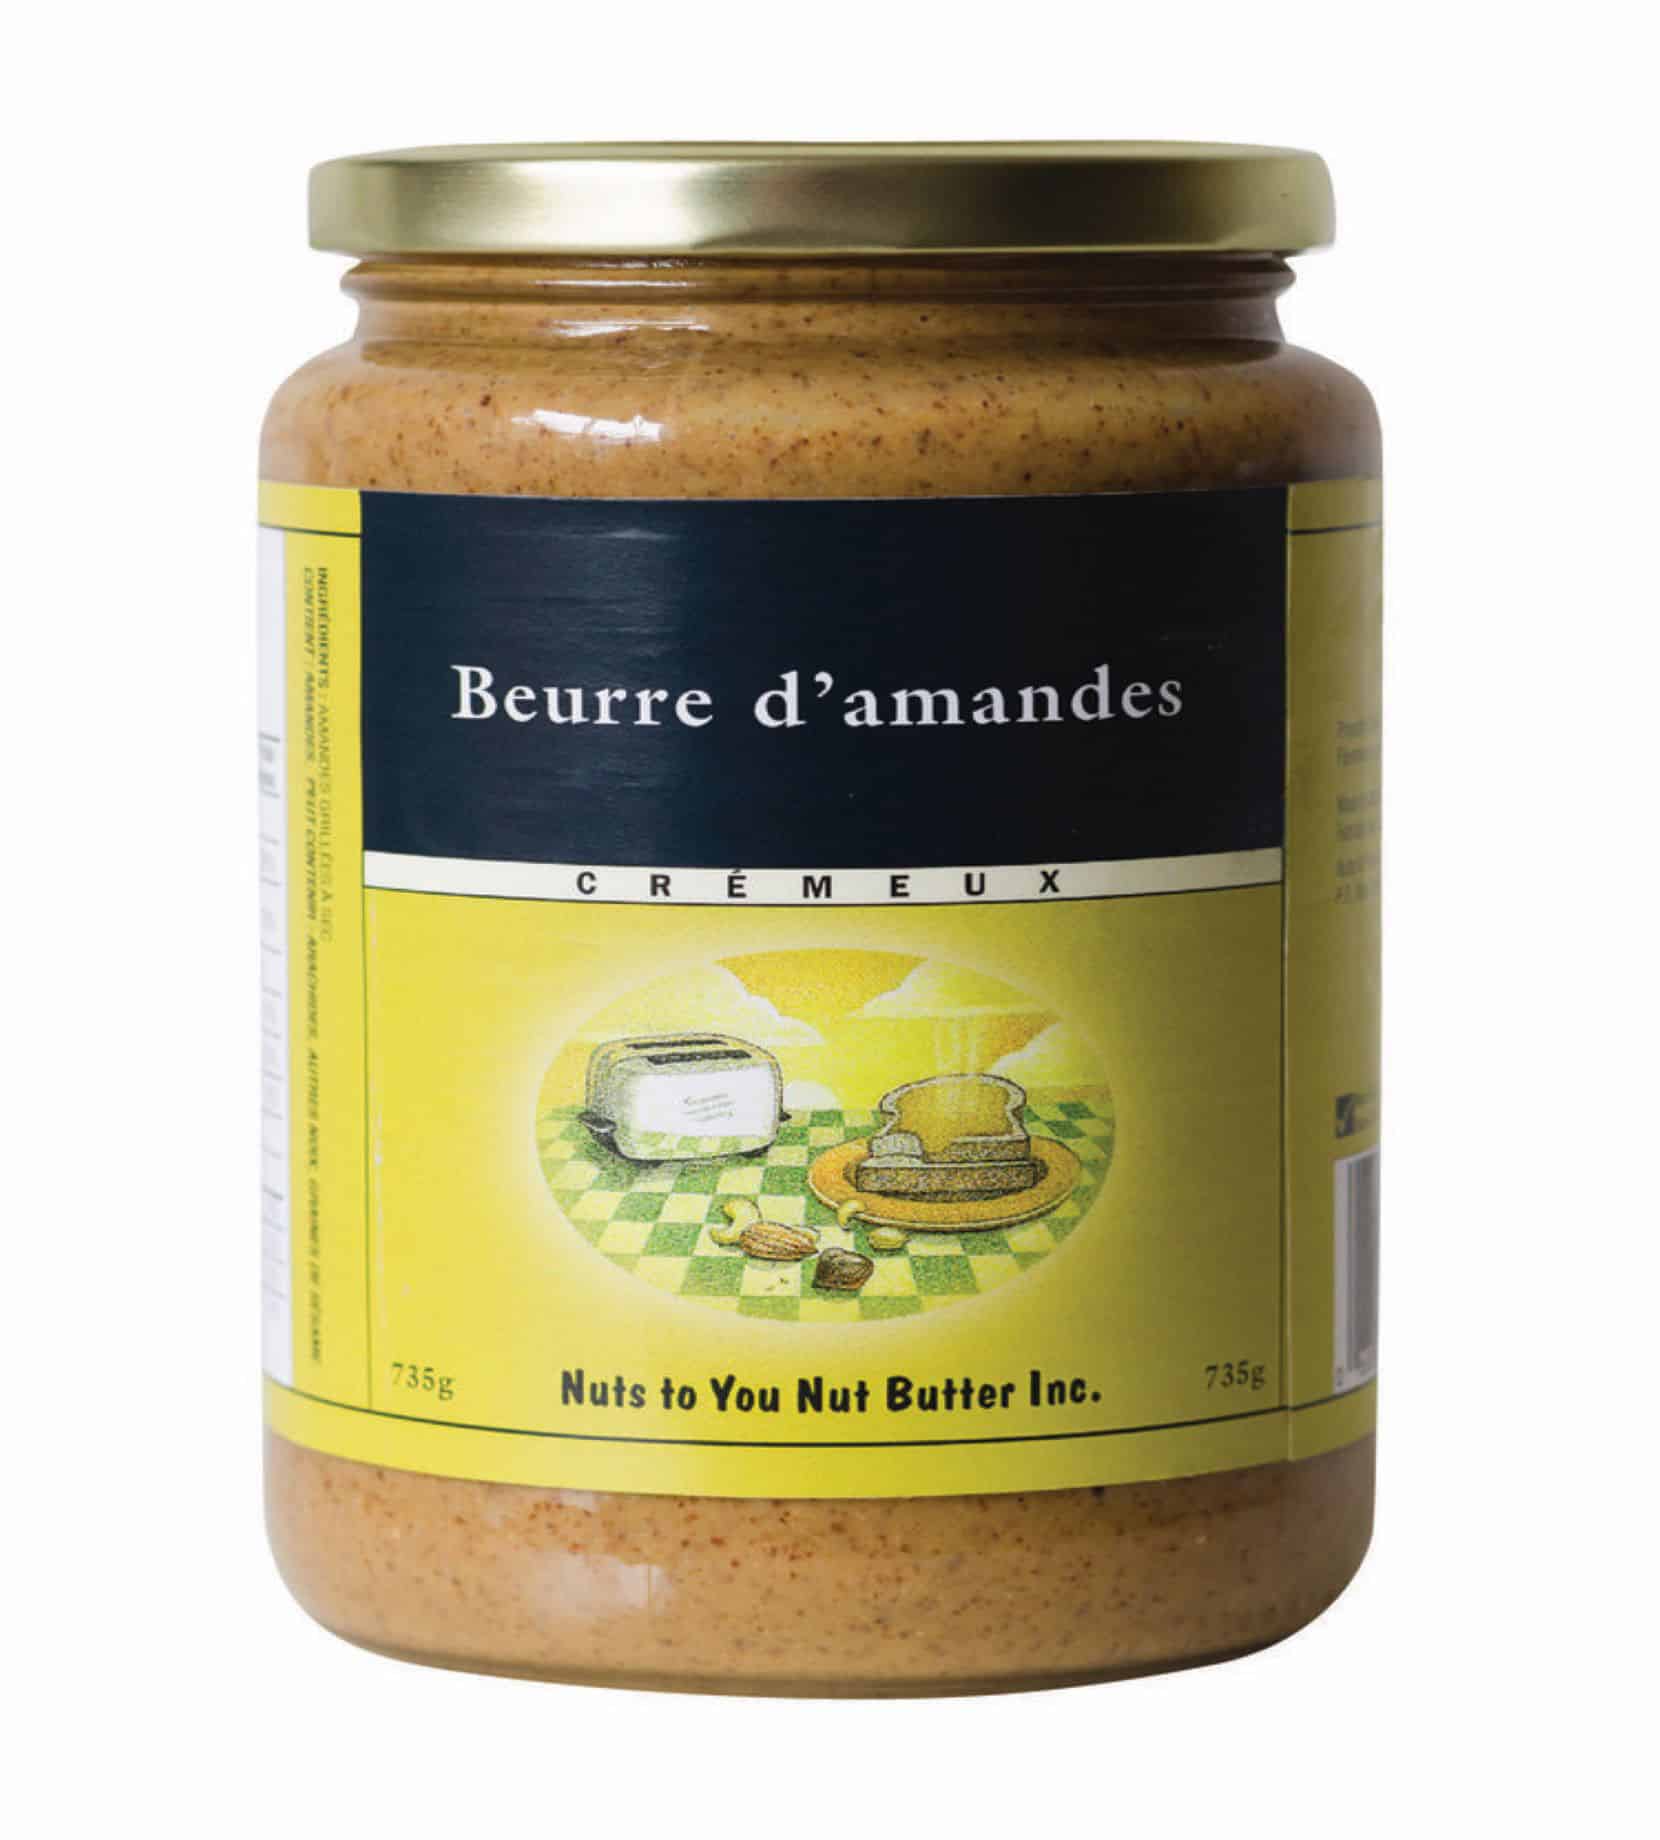 Beurre d'amandes biologiques crémeux — Nuts to You Nut Butter